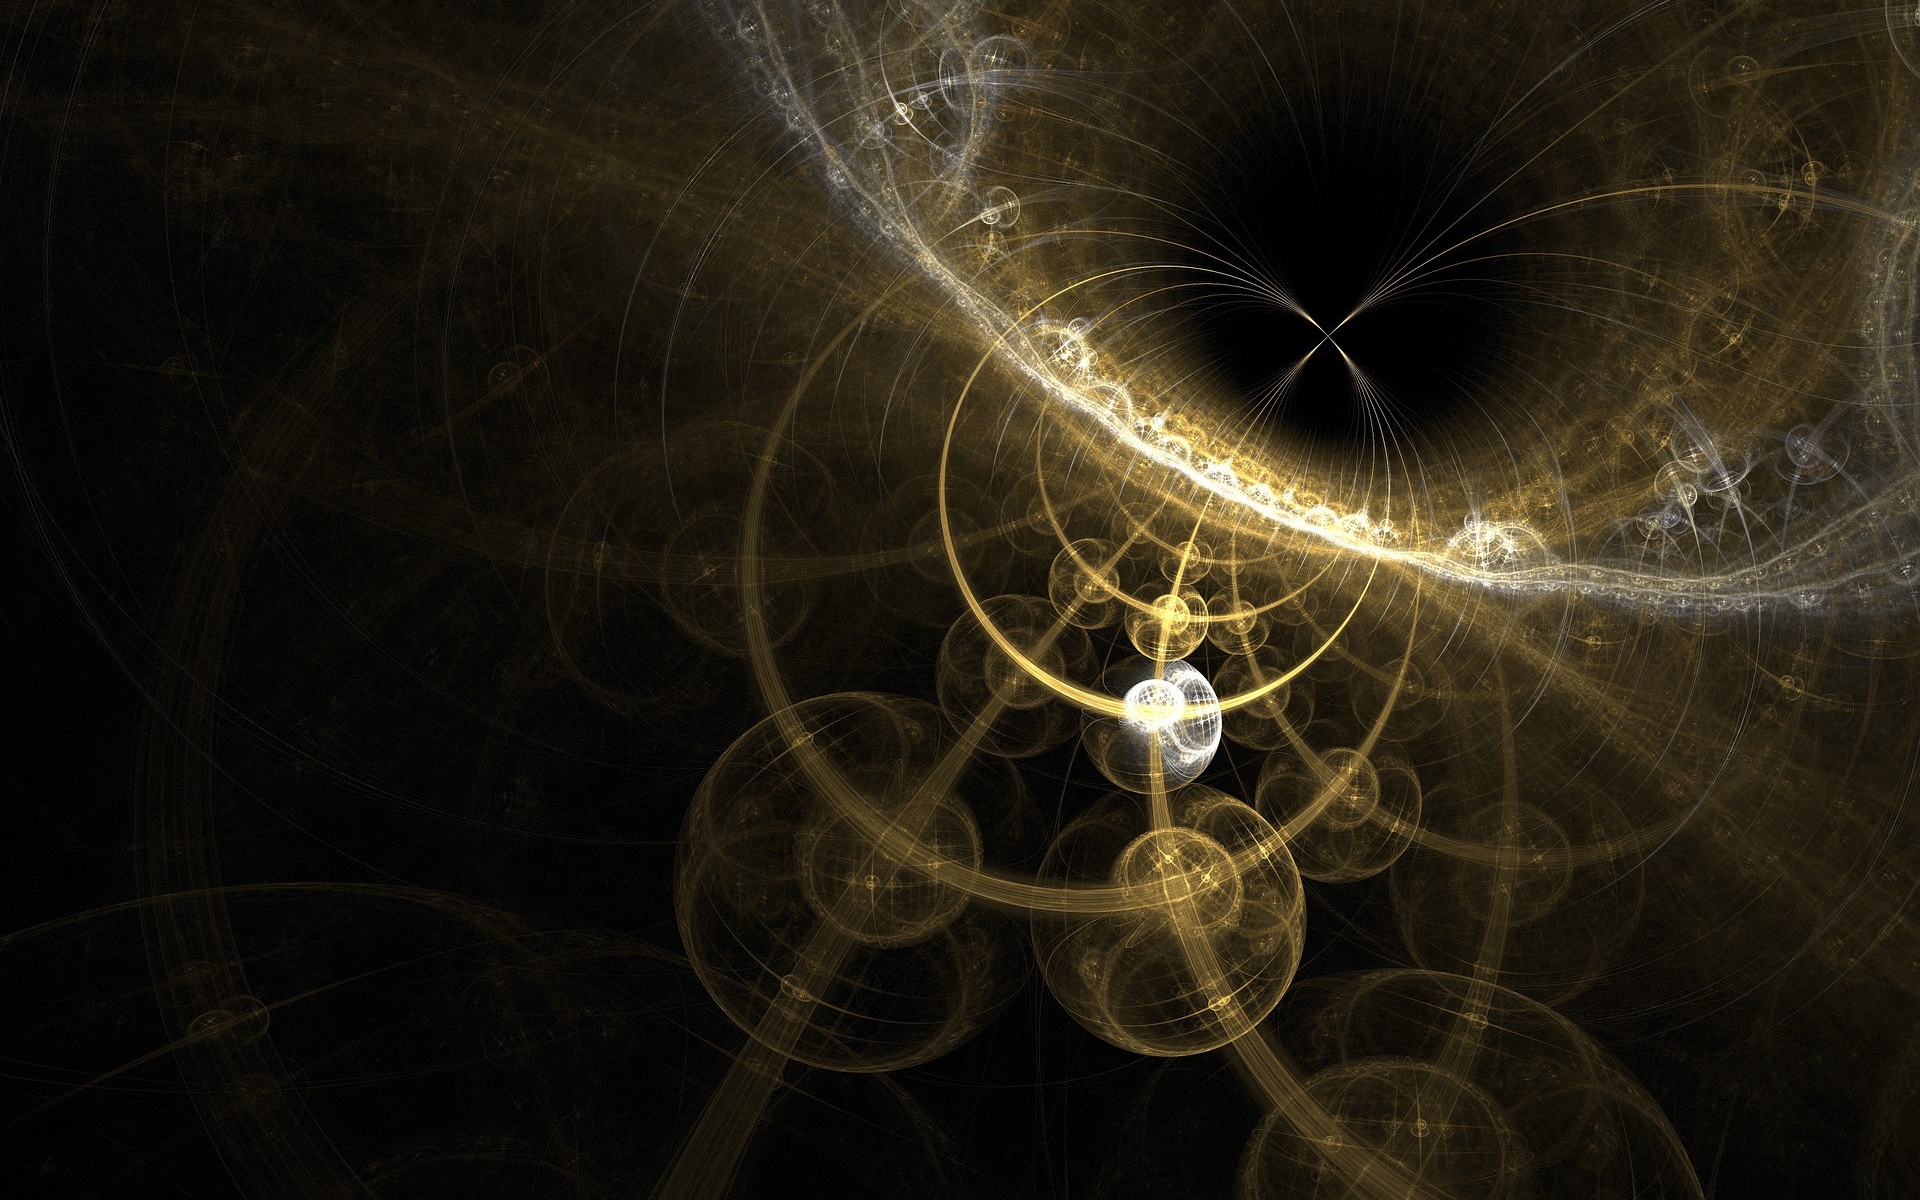 ¿Cómo podríamos aprovechar la energía de un agujero negro?